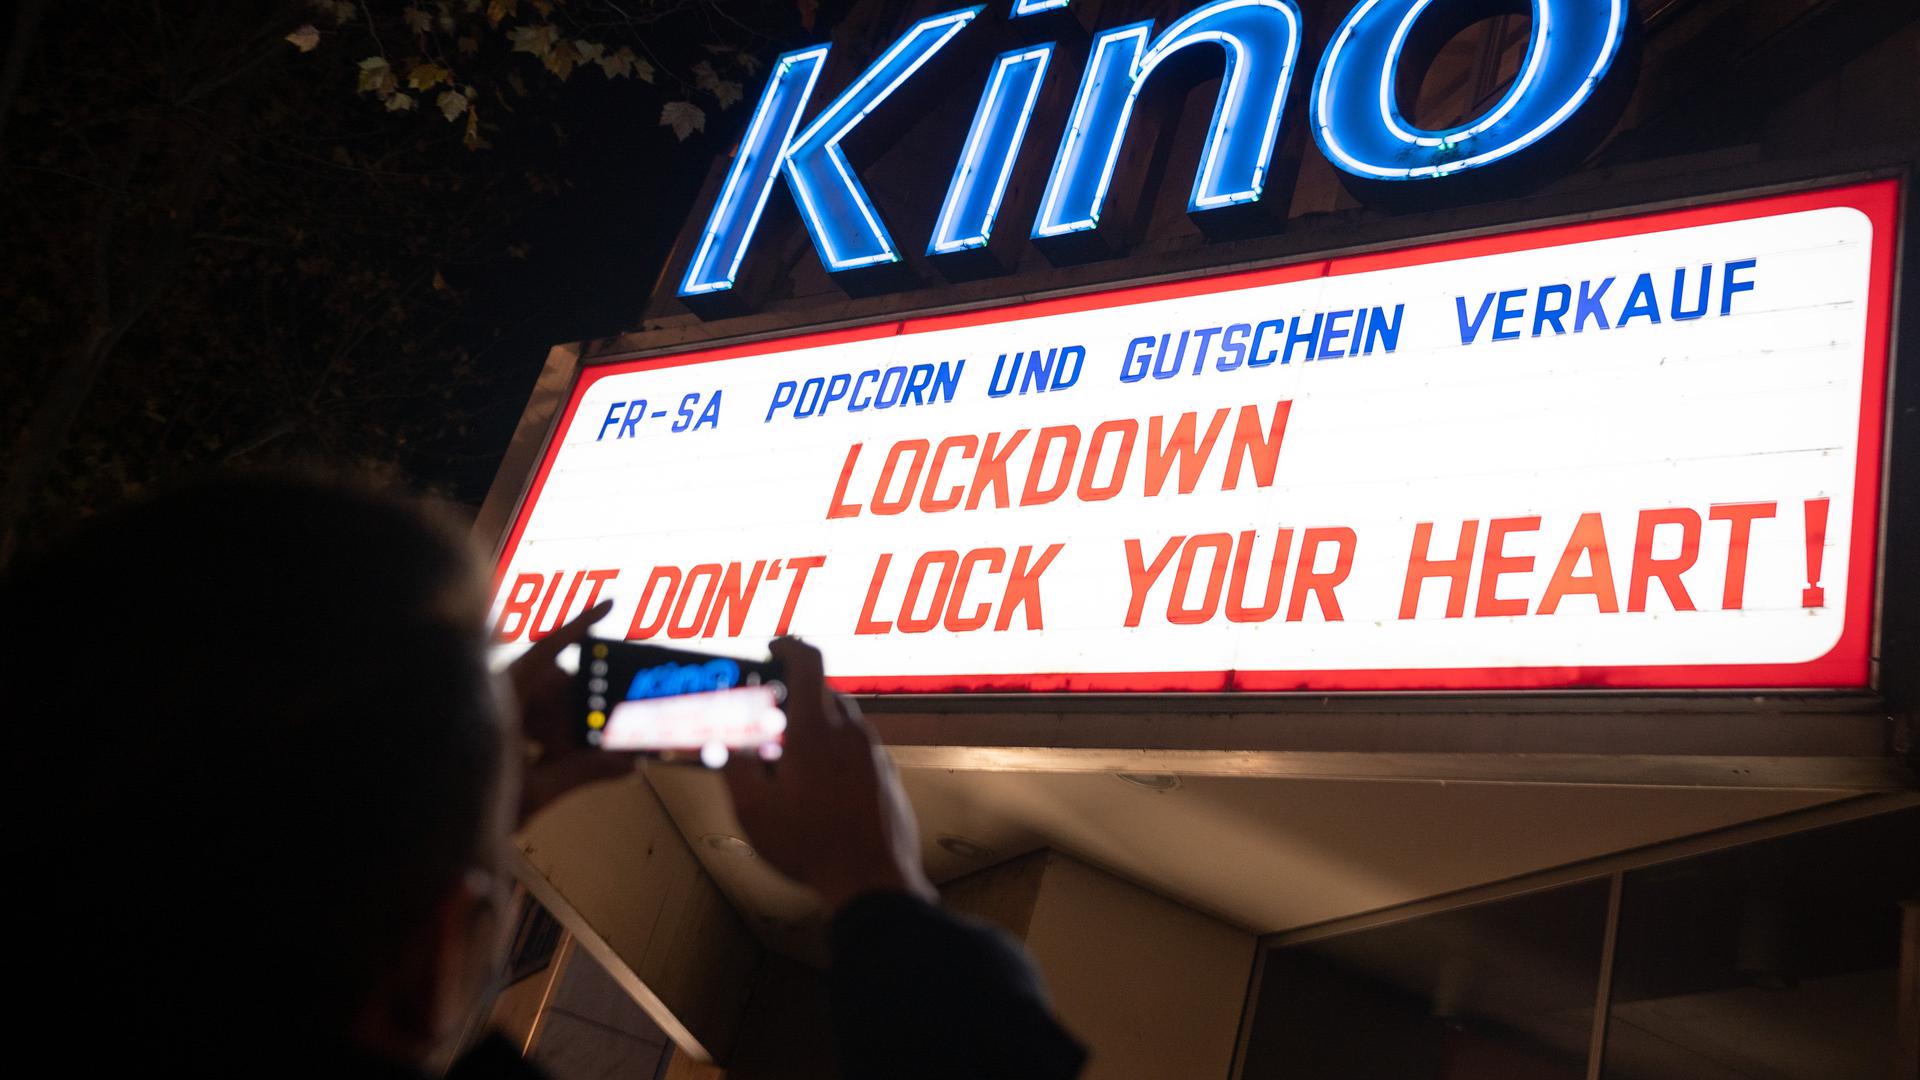 Ein Mann fotografiert die beleuchtete Anzeigetafel eines Kinos auf der "Lockdown but don't lock your heart!" steht. 